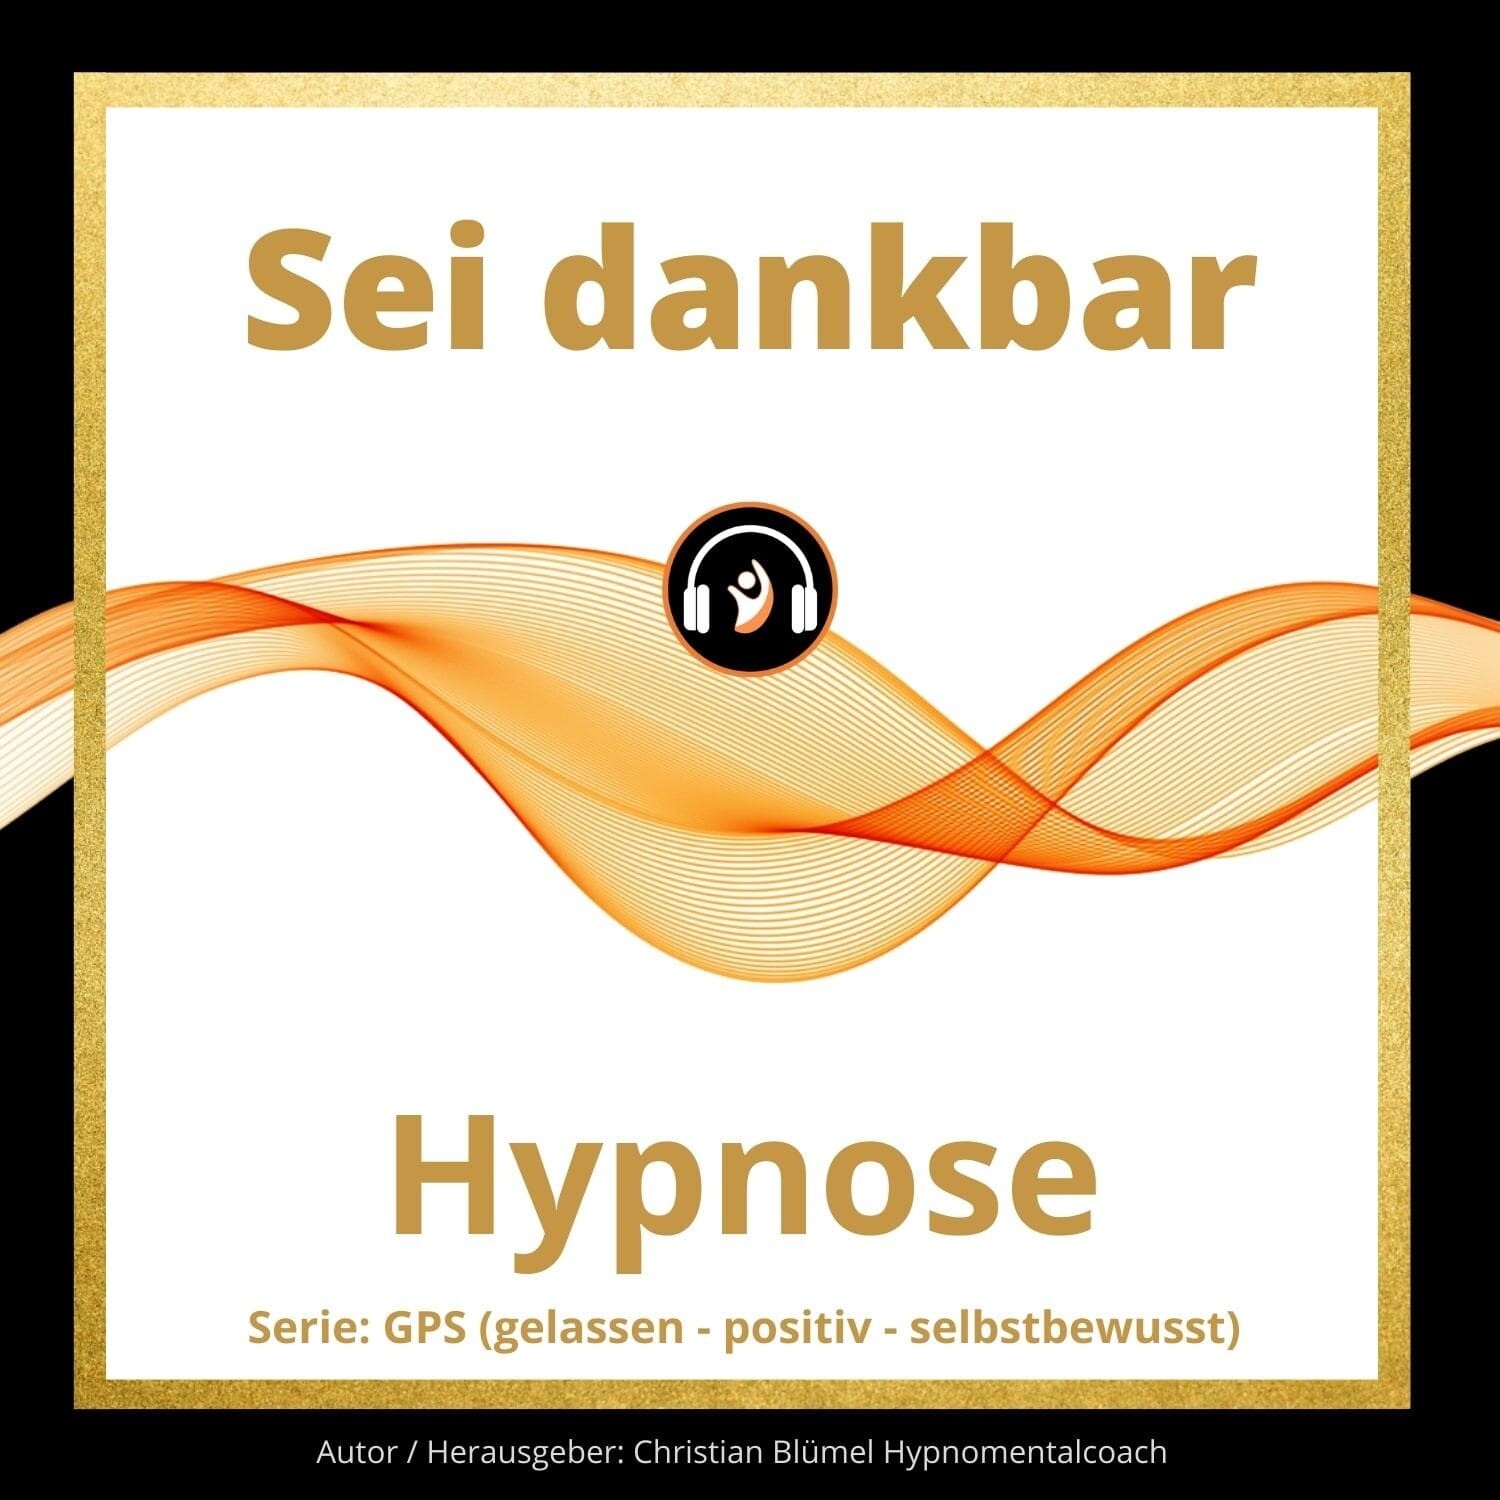 Audio Hypnose: Sei dankbar
GPS – gelassen-positiv-selbstbewusst